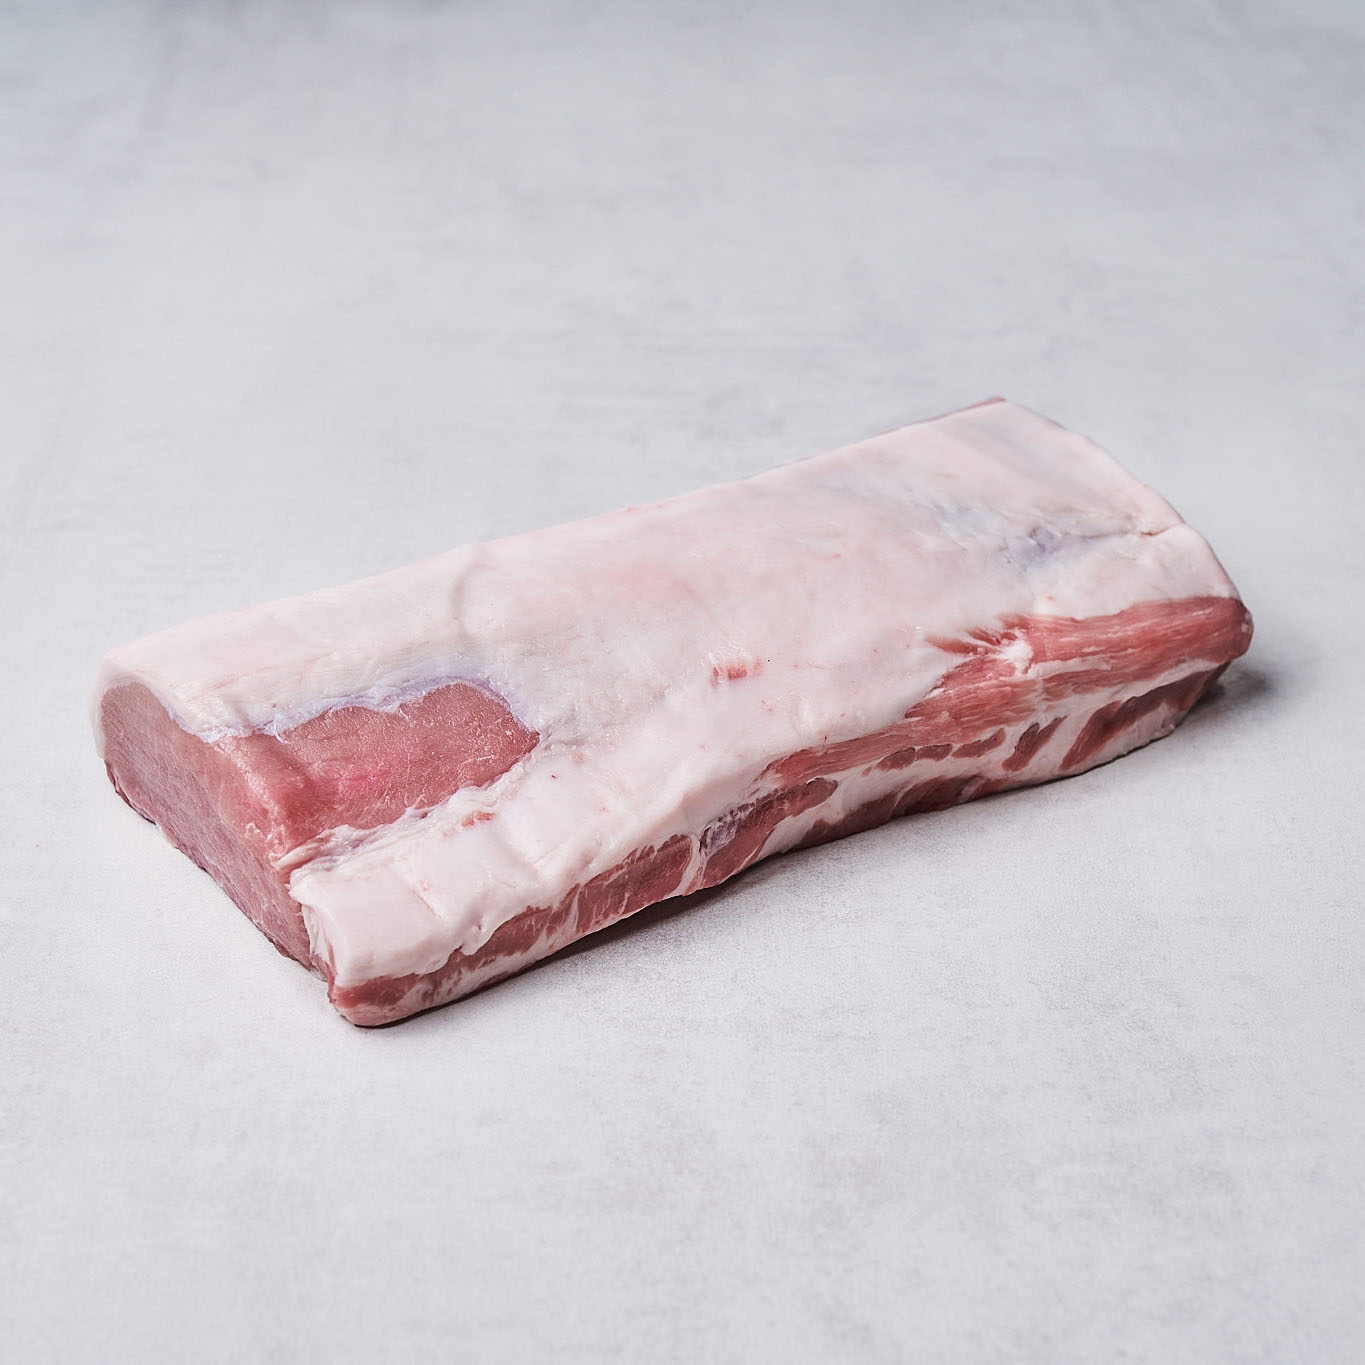 fitmeat-schweinefleisch-karree-ohne-schwarte-3